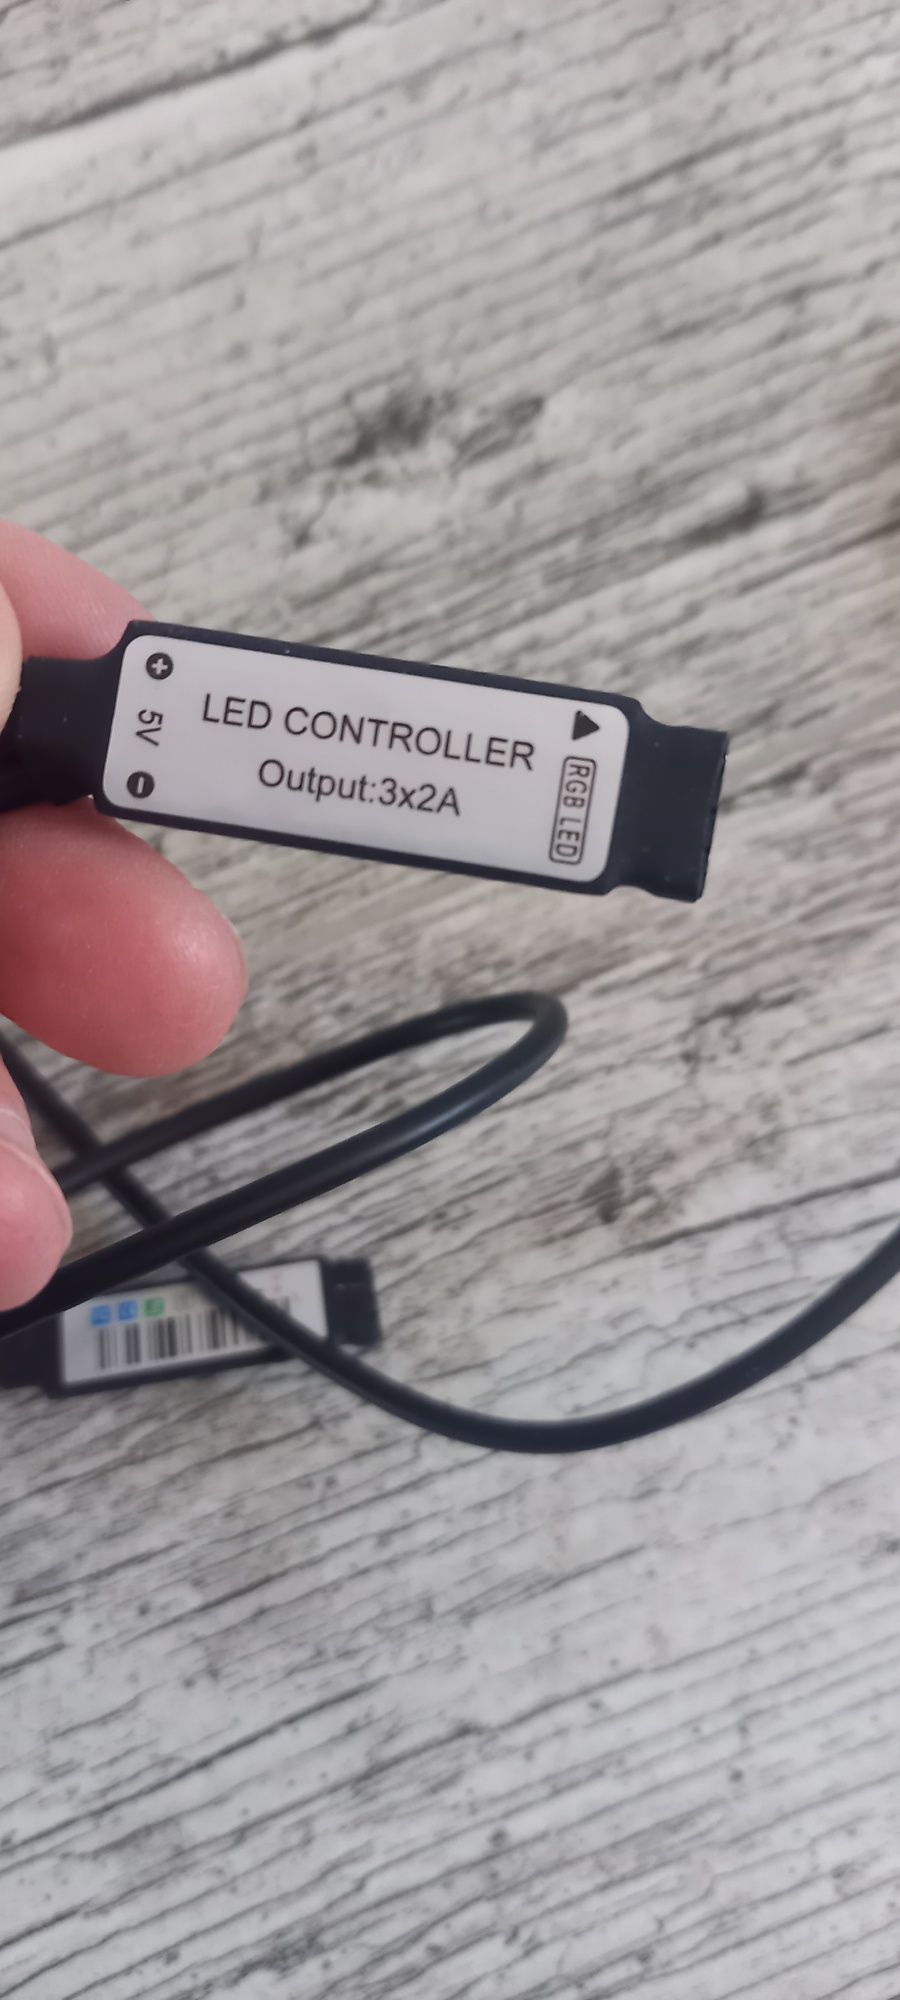 Kable USB mini B 3.0 -USB 2.0, led, midi